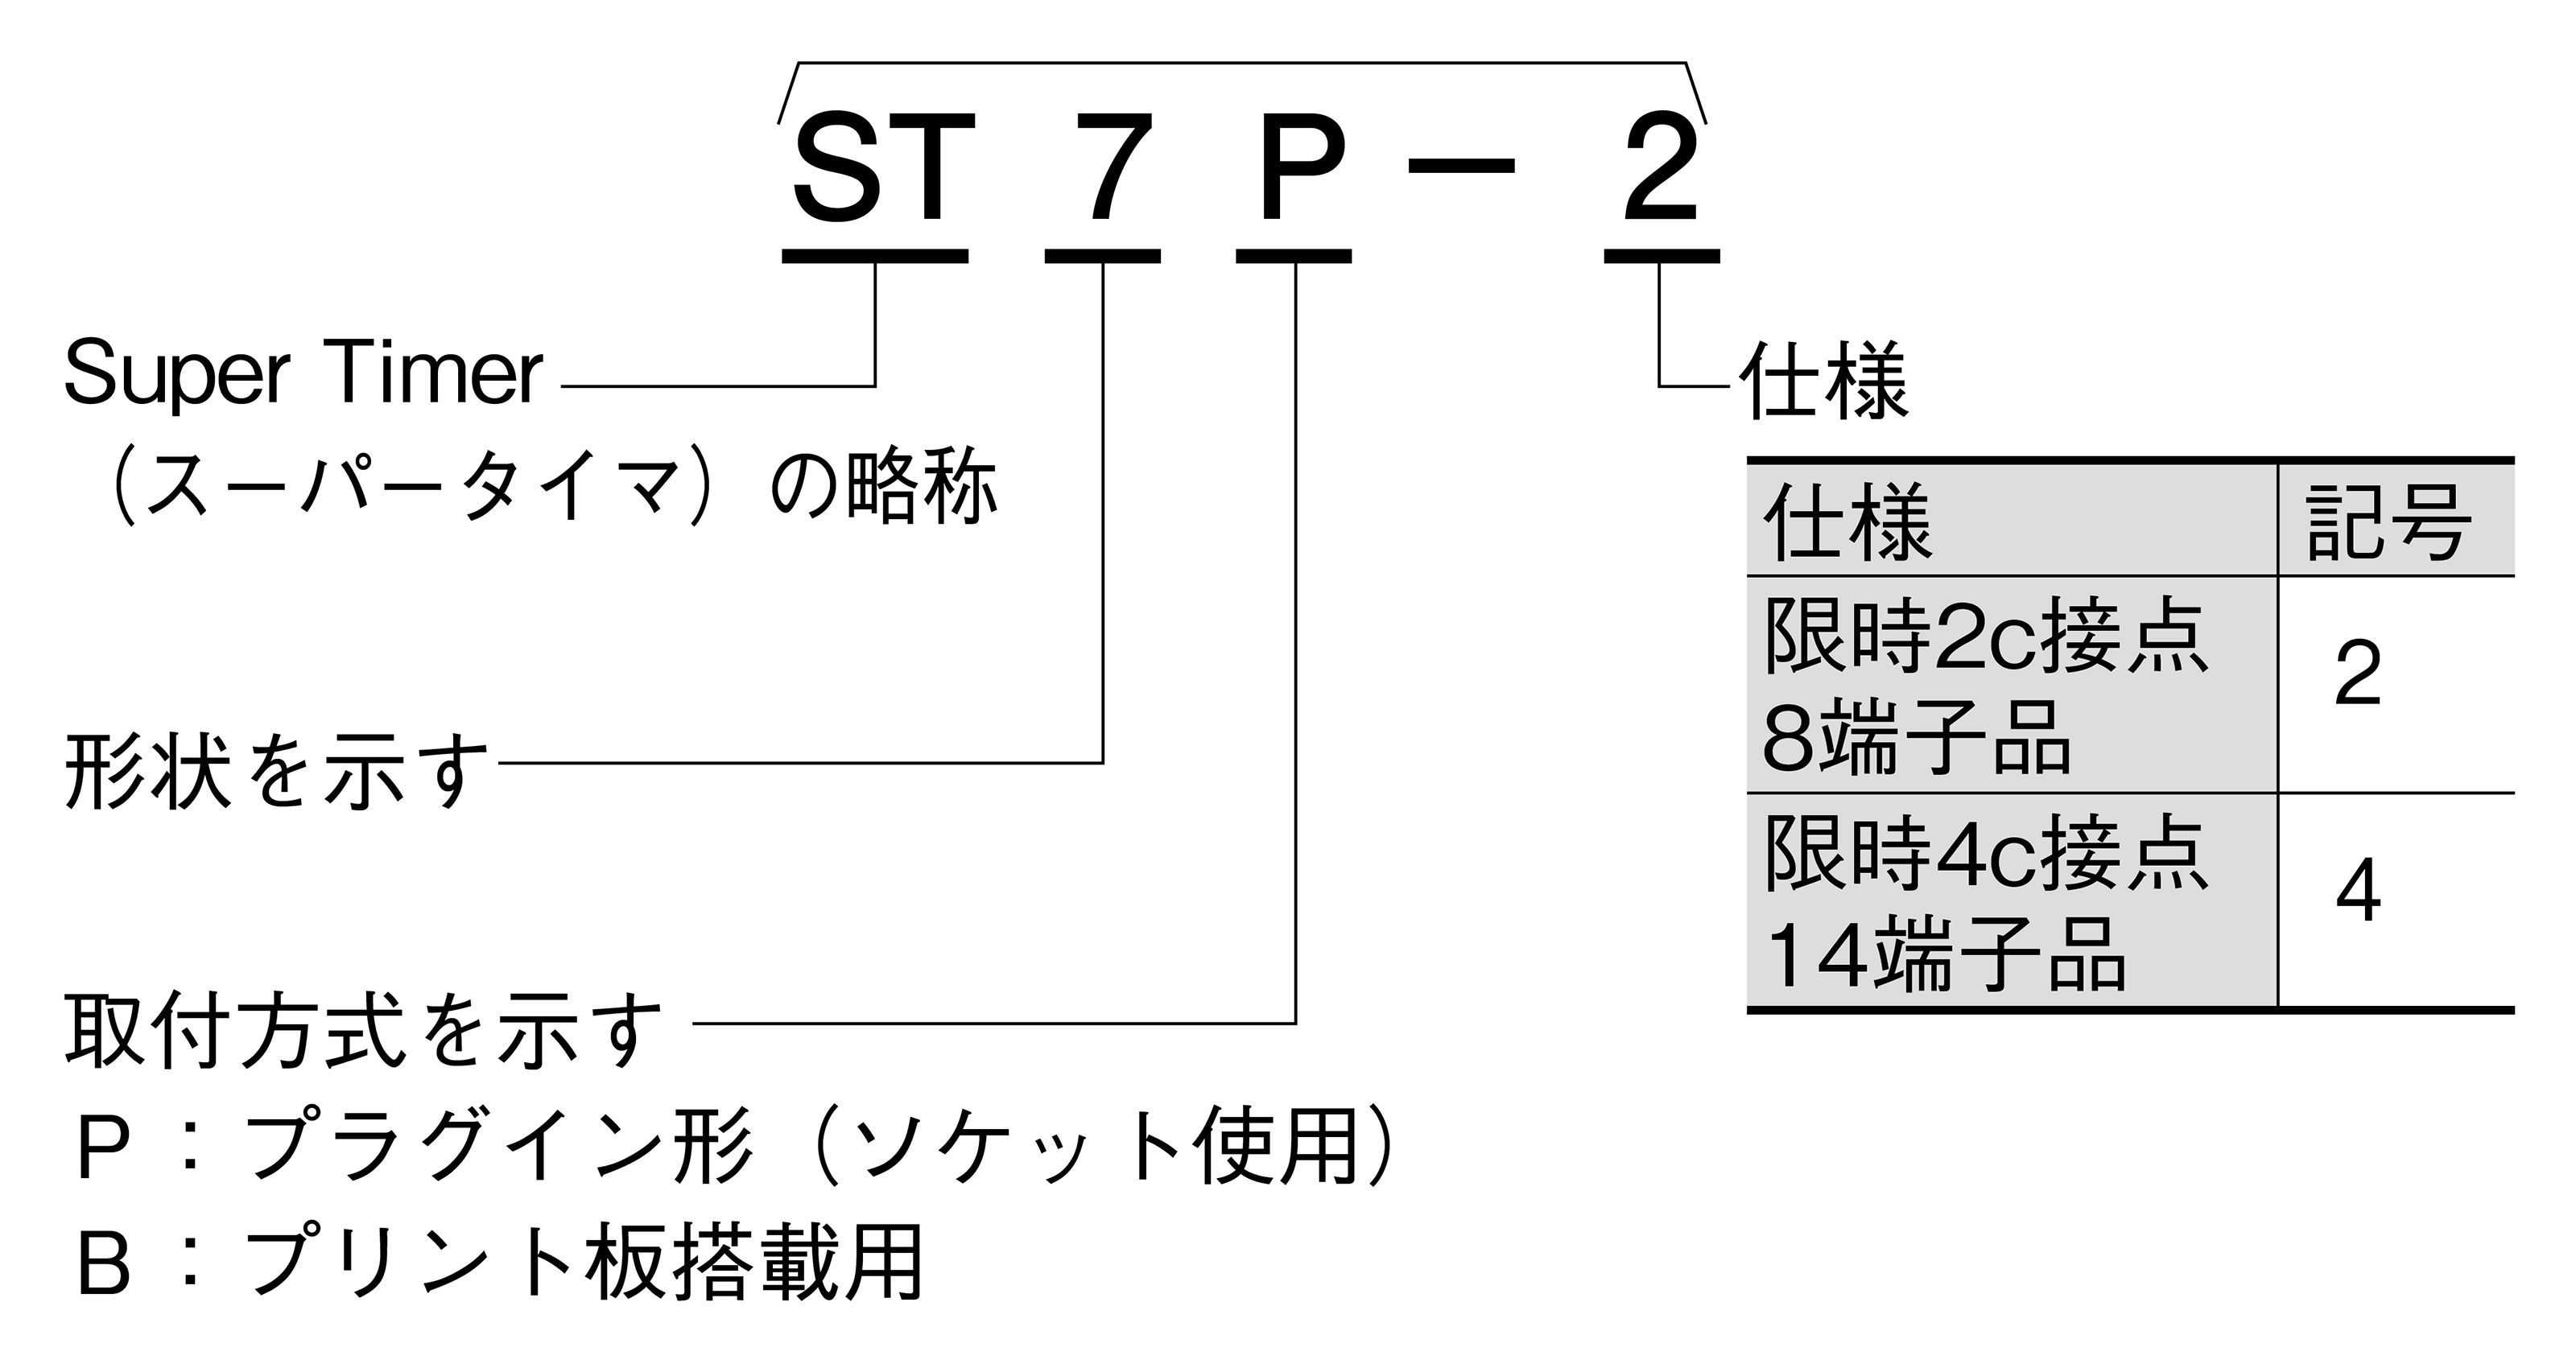 ST7Pシリーズ